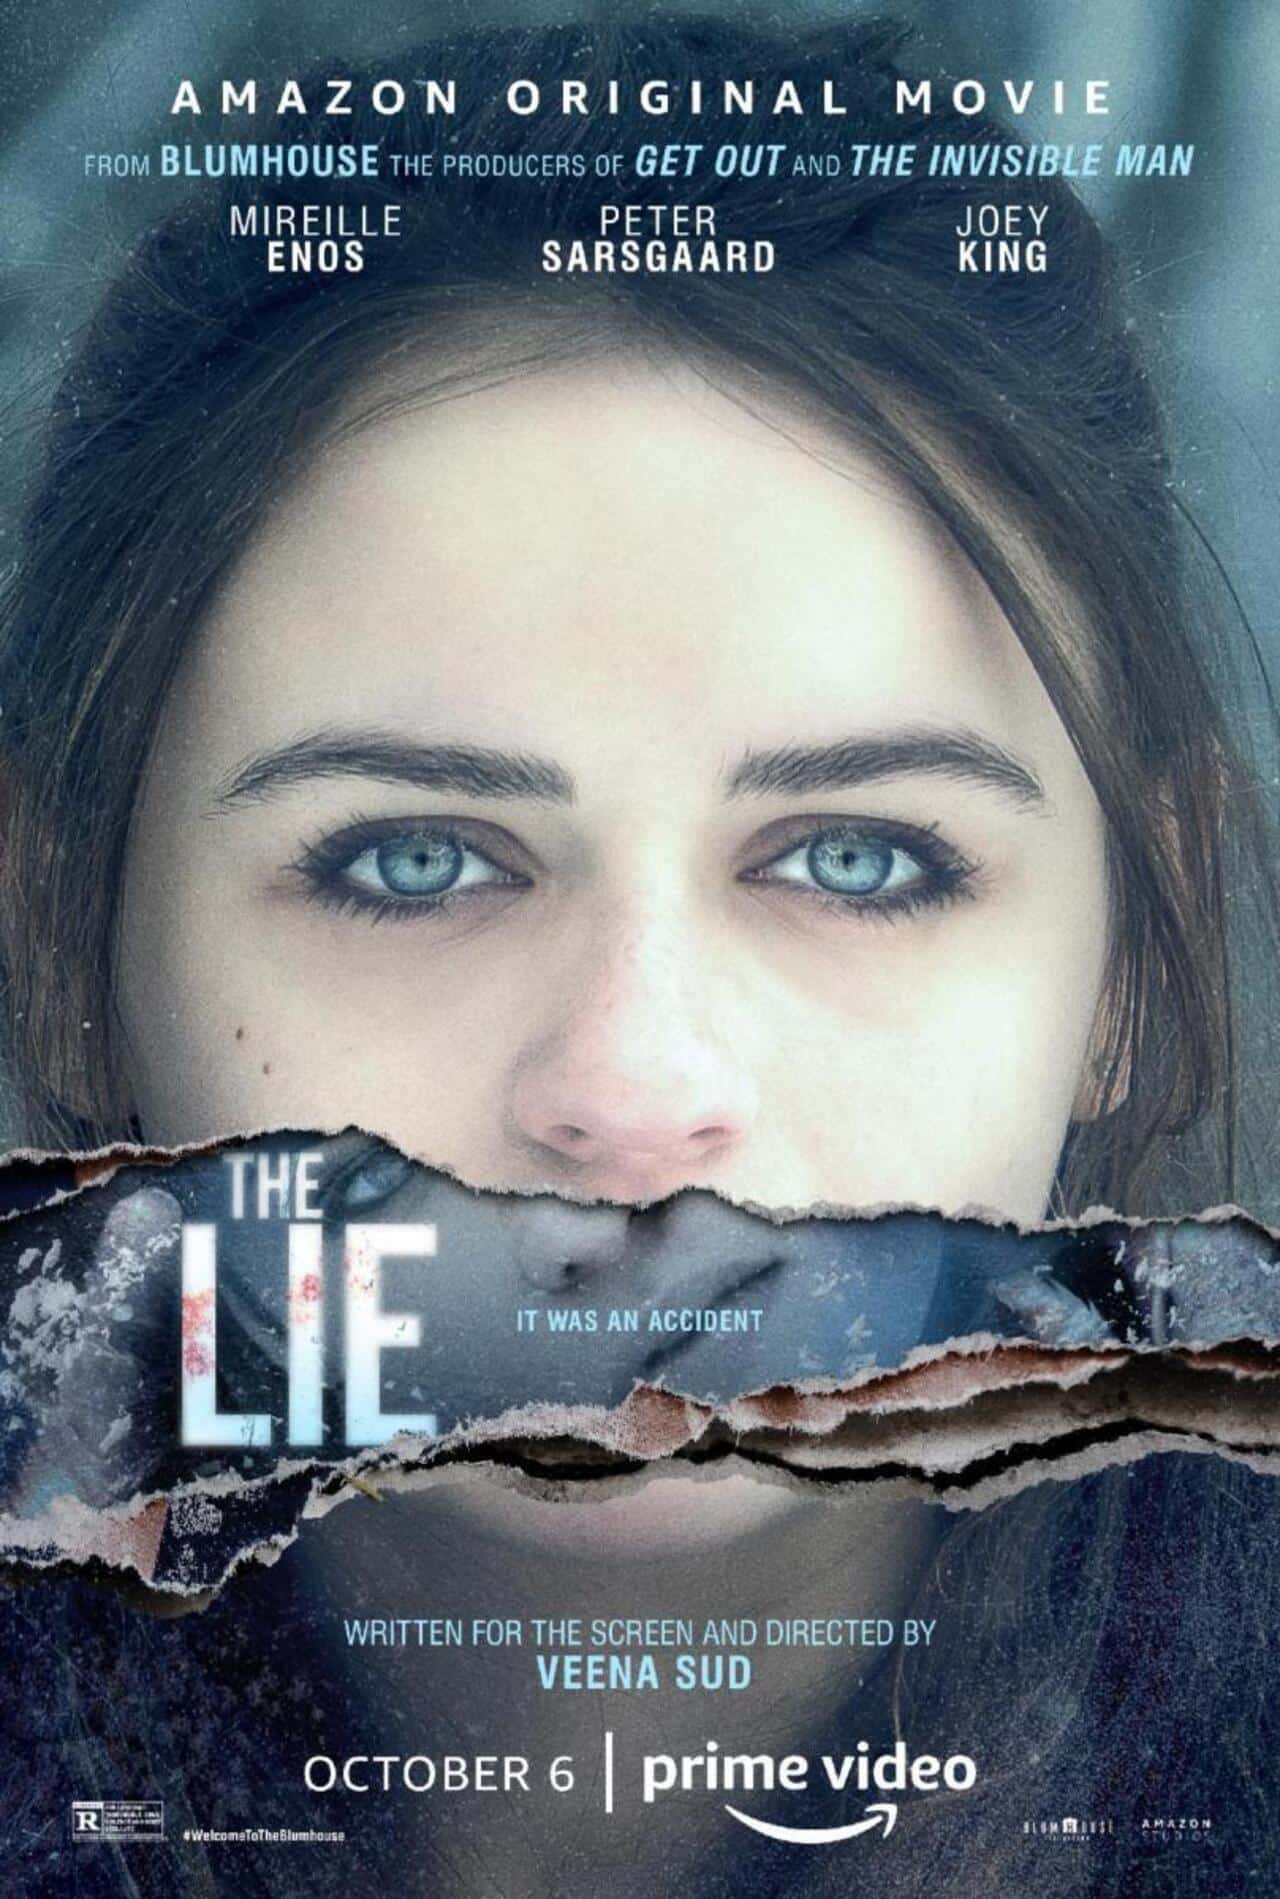 Cartel de la película El engaño (The lie) de Amazon Prime Video